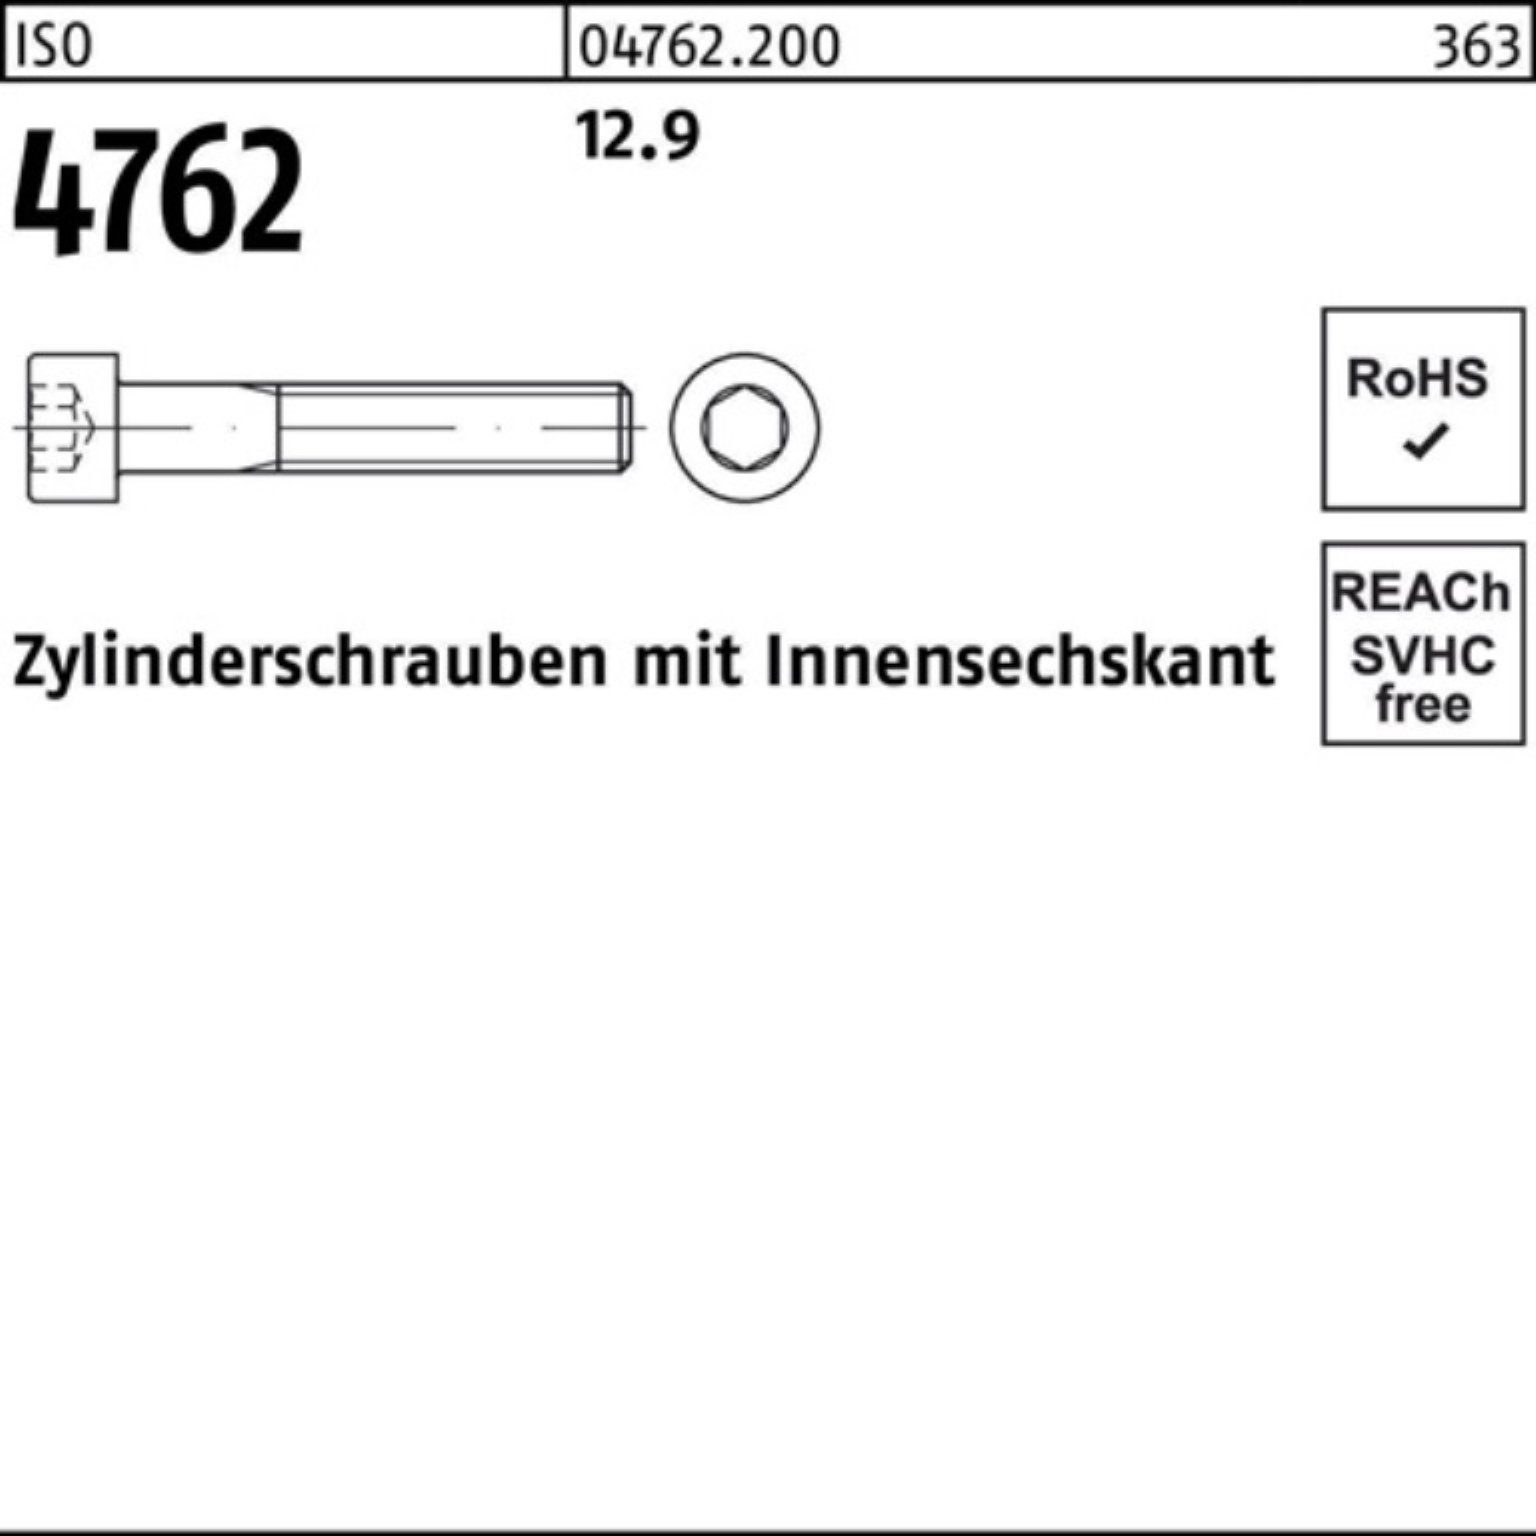 Innen-6kt 1 100er 130 Zylinderschraube Zylinderschraube M27x 12.9 Reyher Pack 4762 ISO Stück